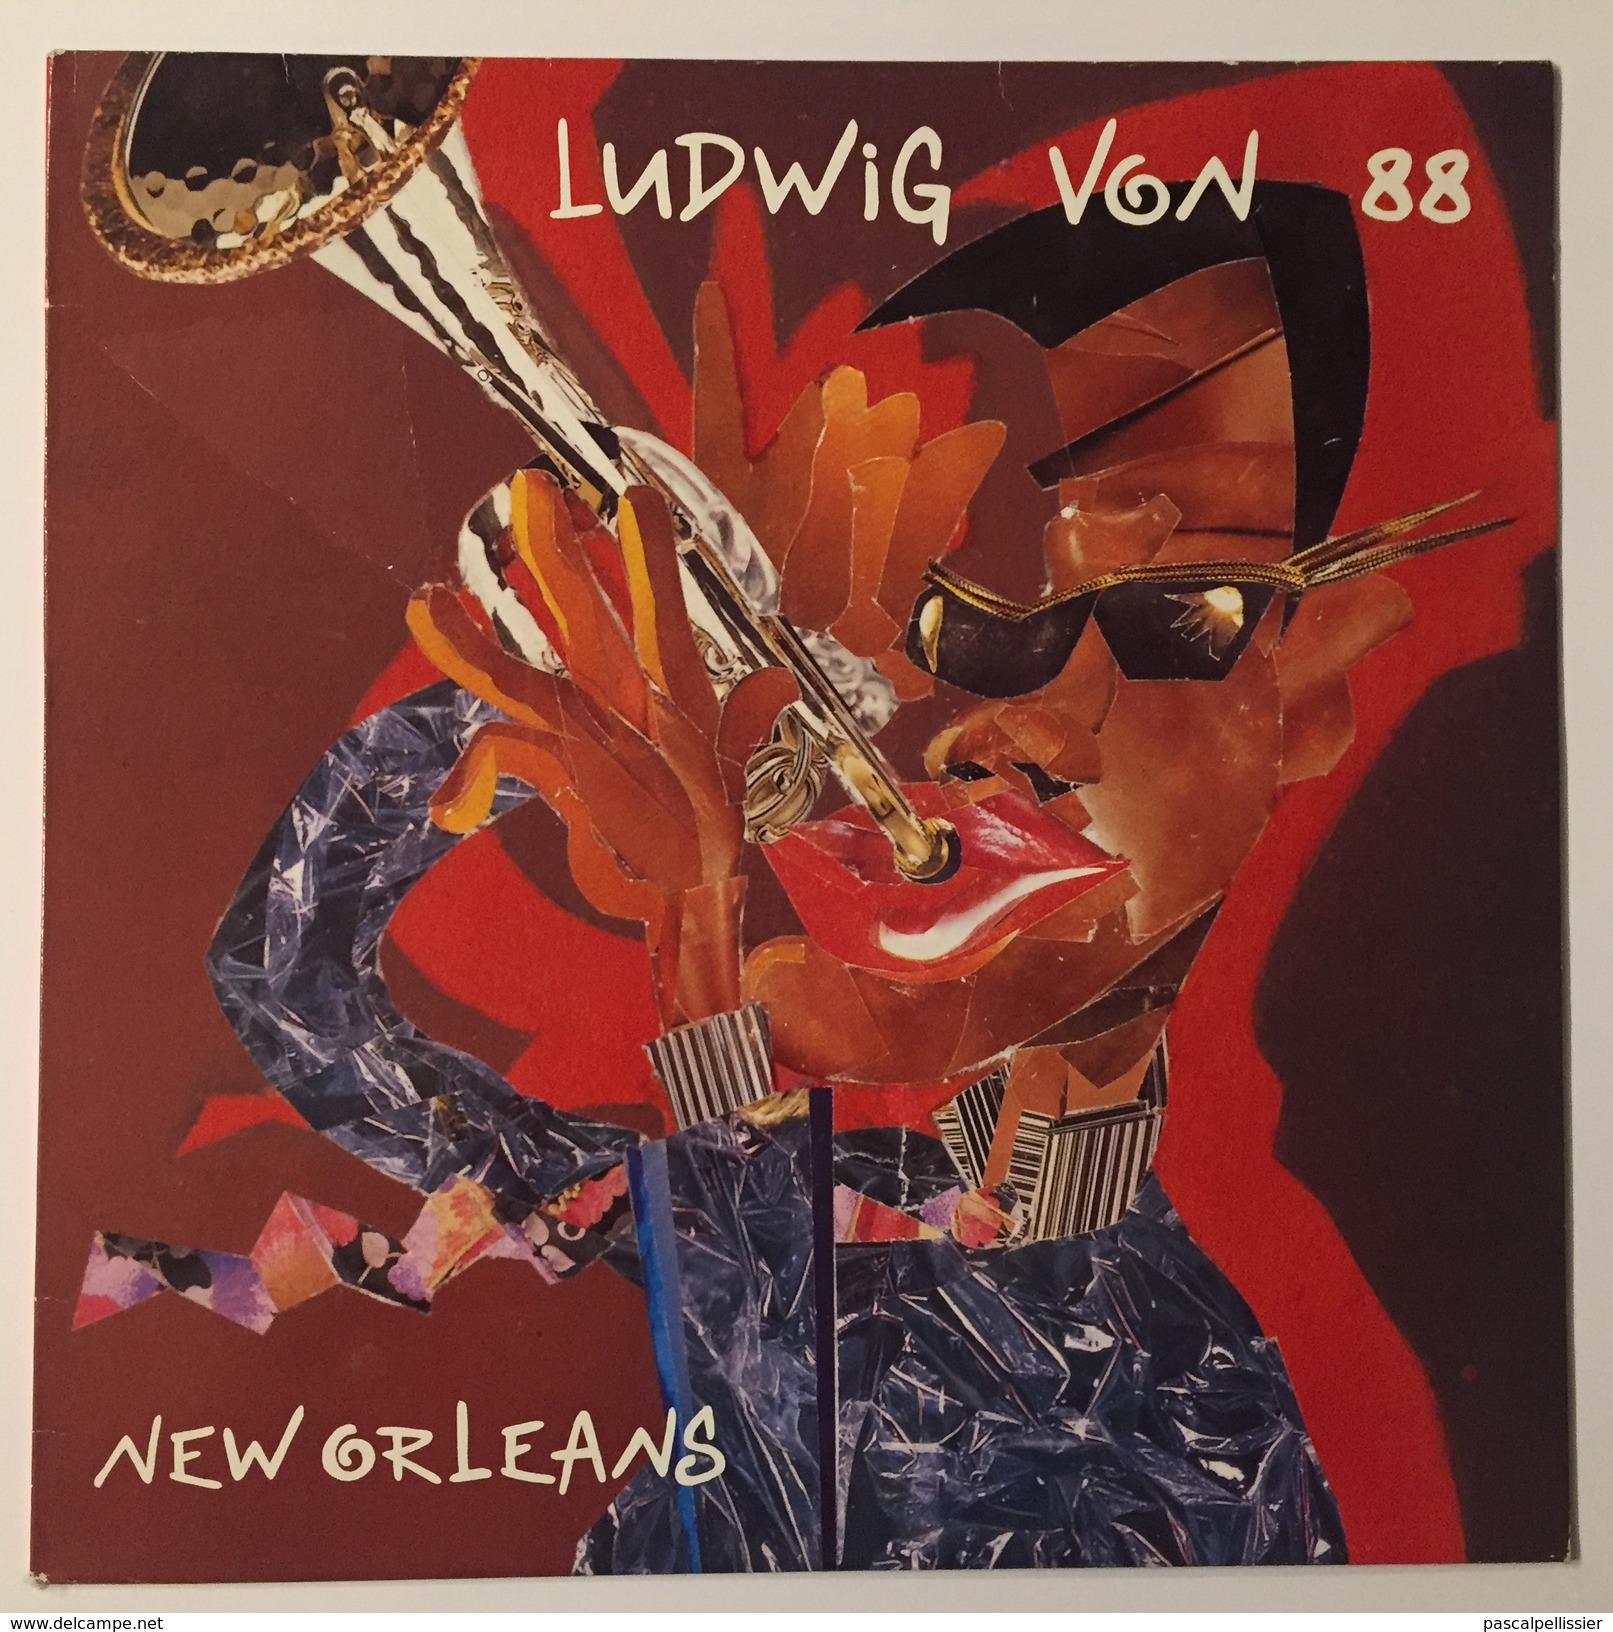 LUDWIG VON 88 - New Orleans - LP 33 RPM - Rock